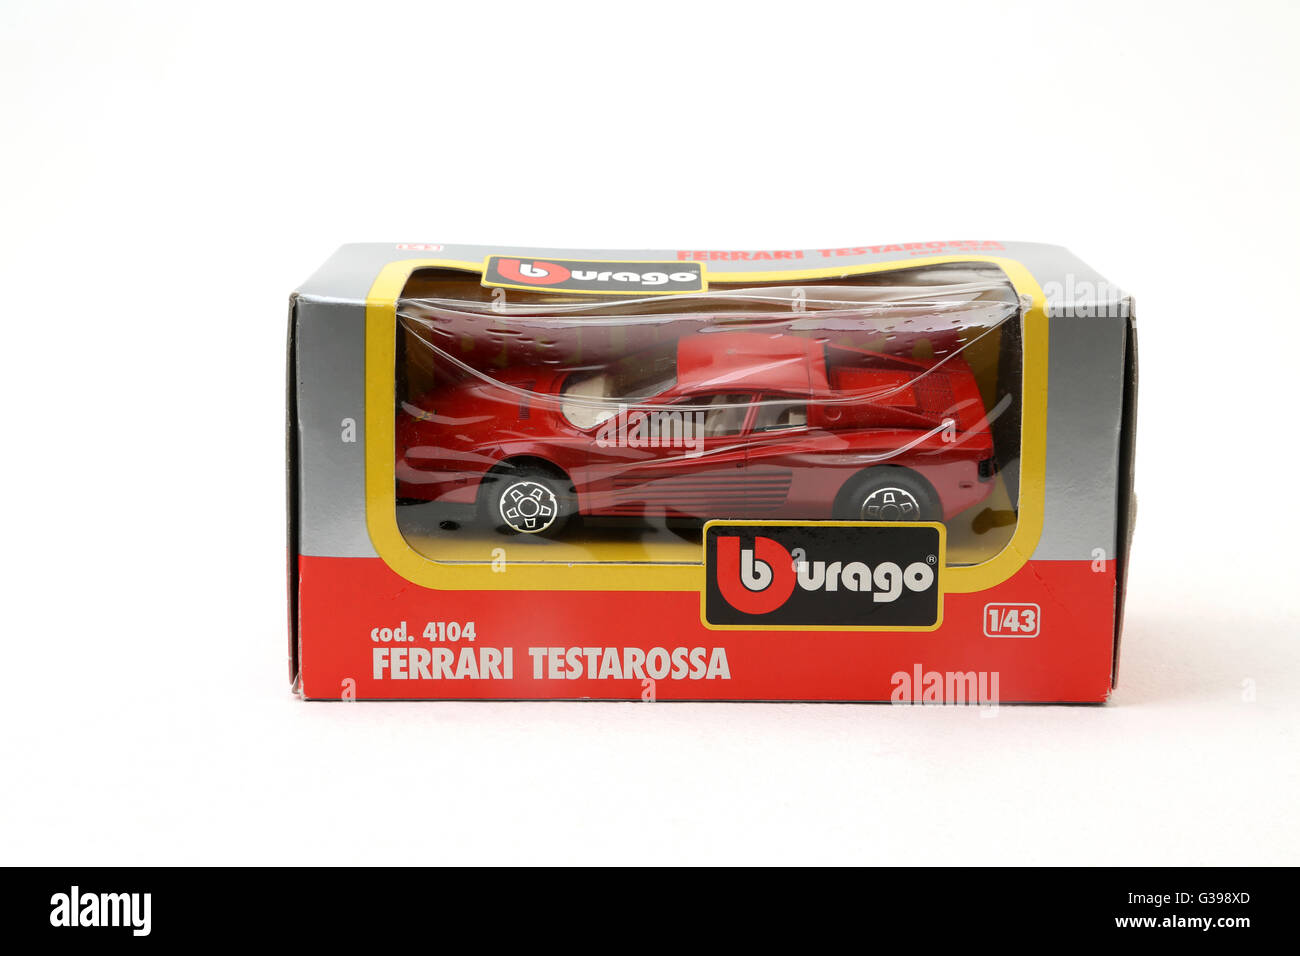 Burago Ferrari Testarossa Toy Car Stock Photo